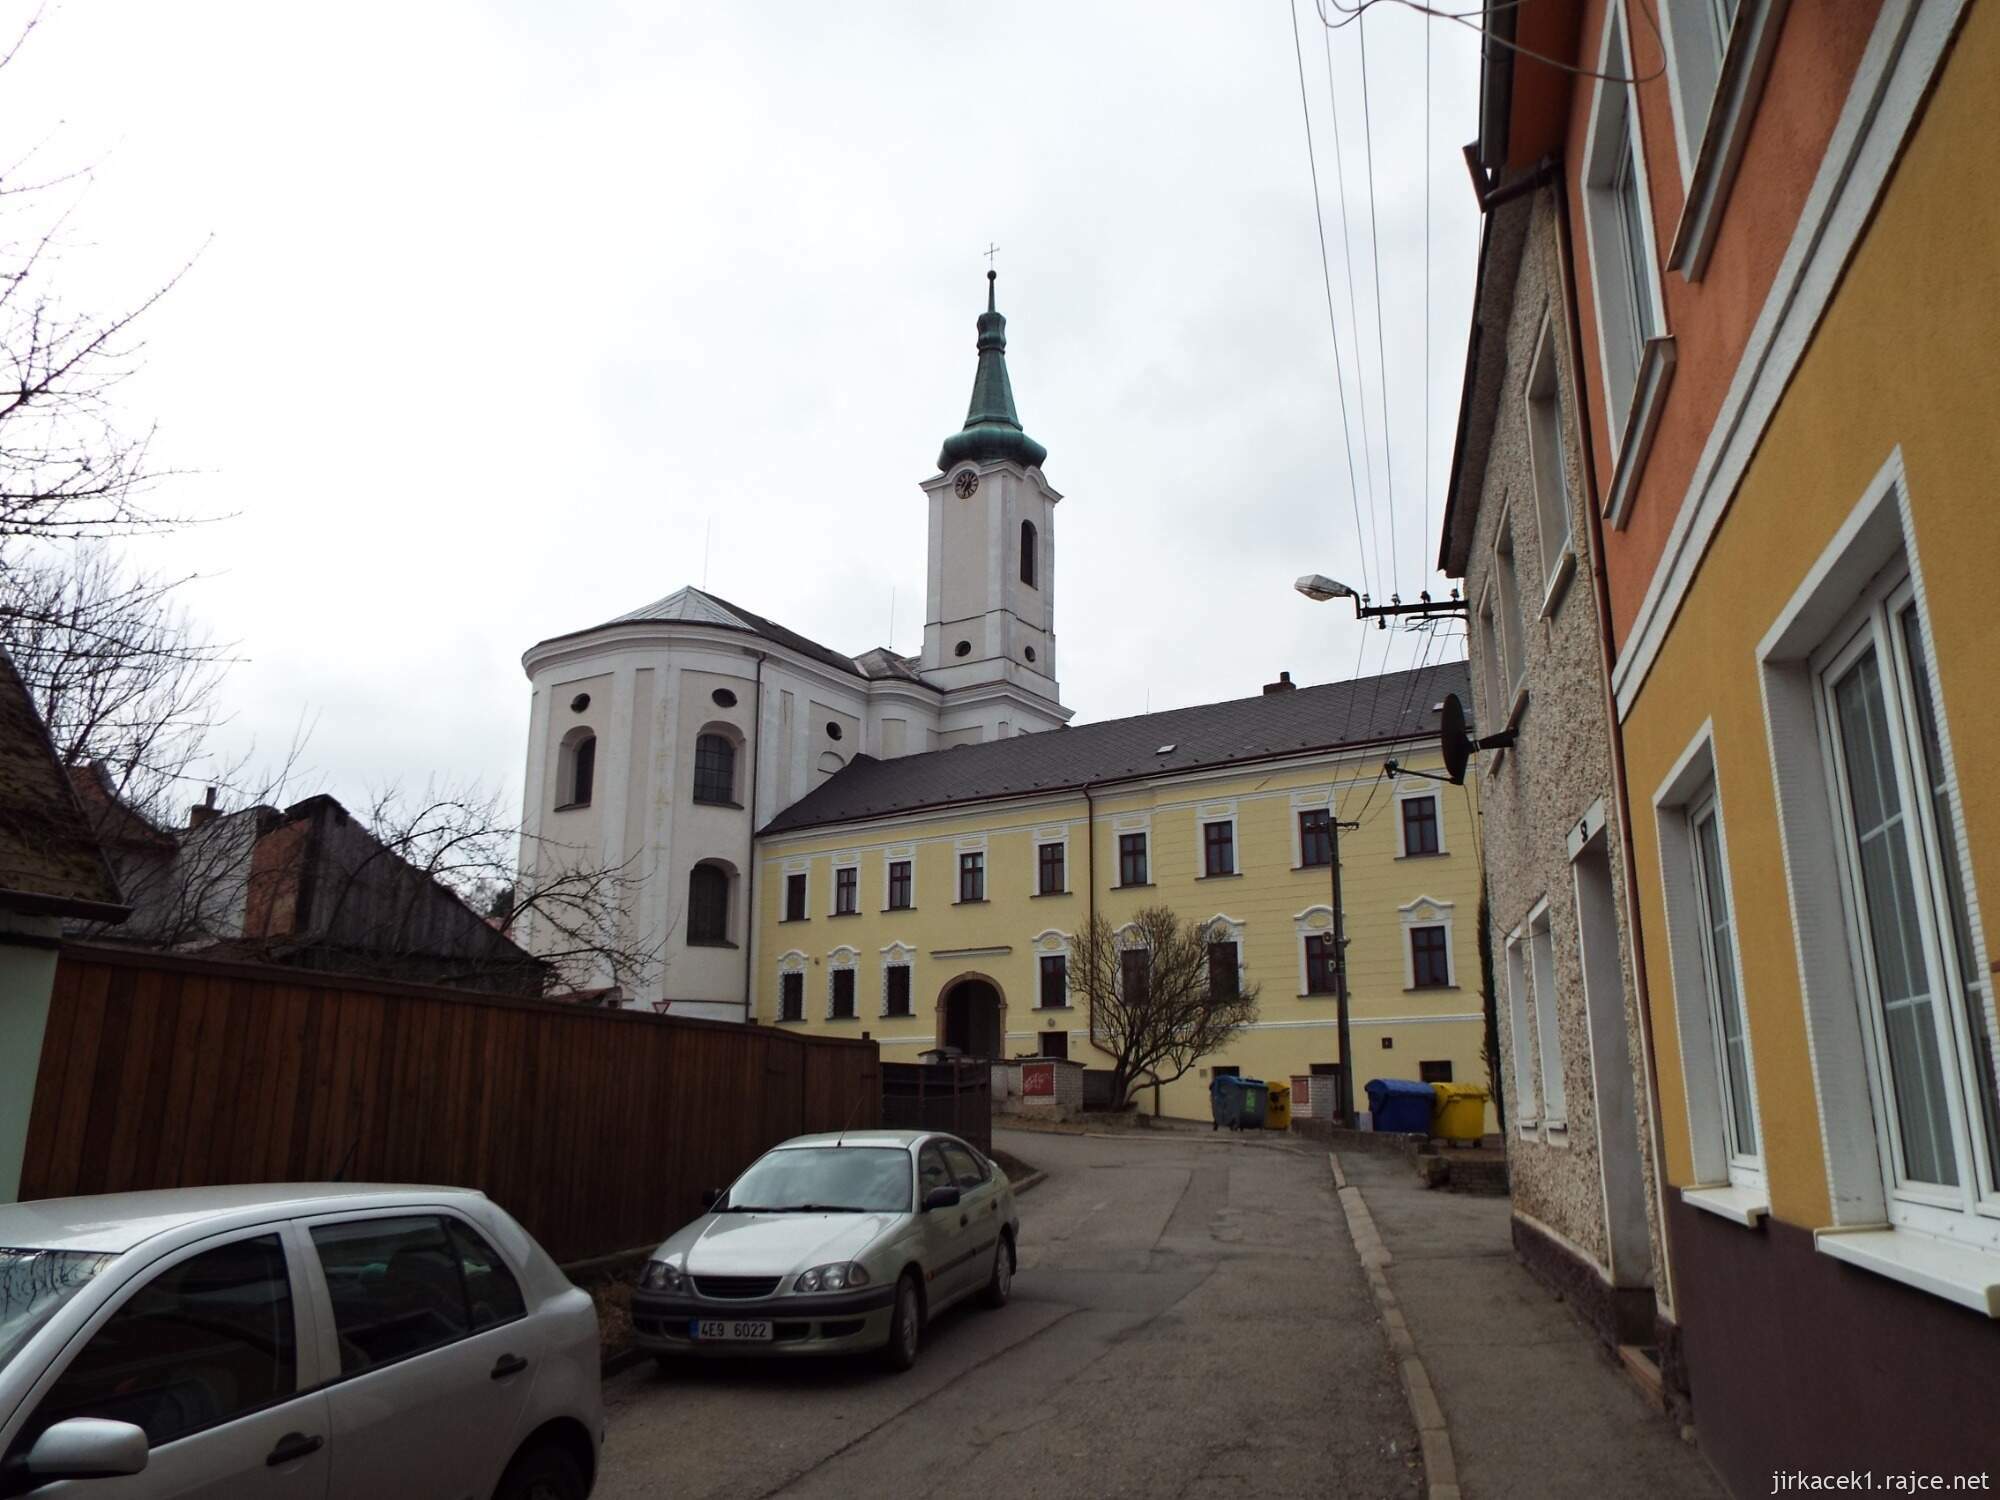 06 - Jevíčko - Kostel Nanebevzetí Panny Marie s klášterem Augustiánů 01